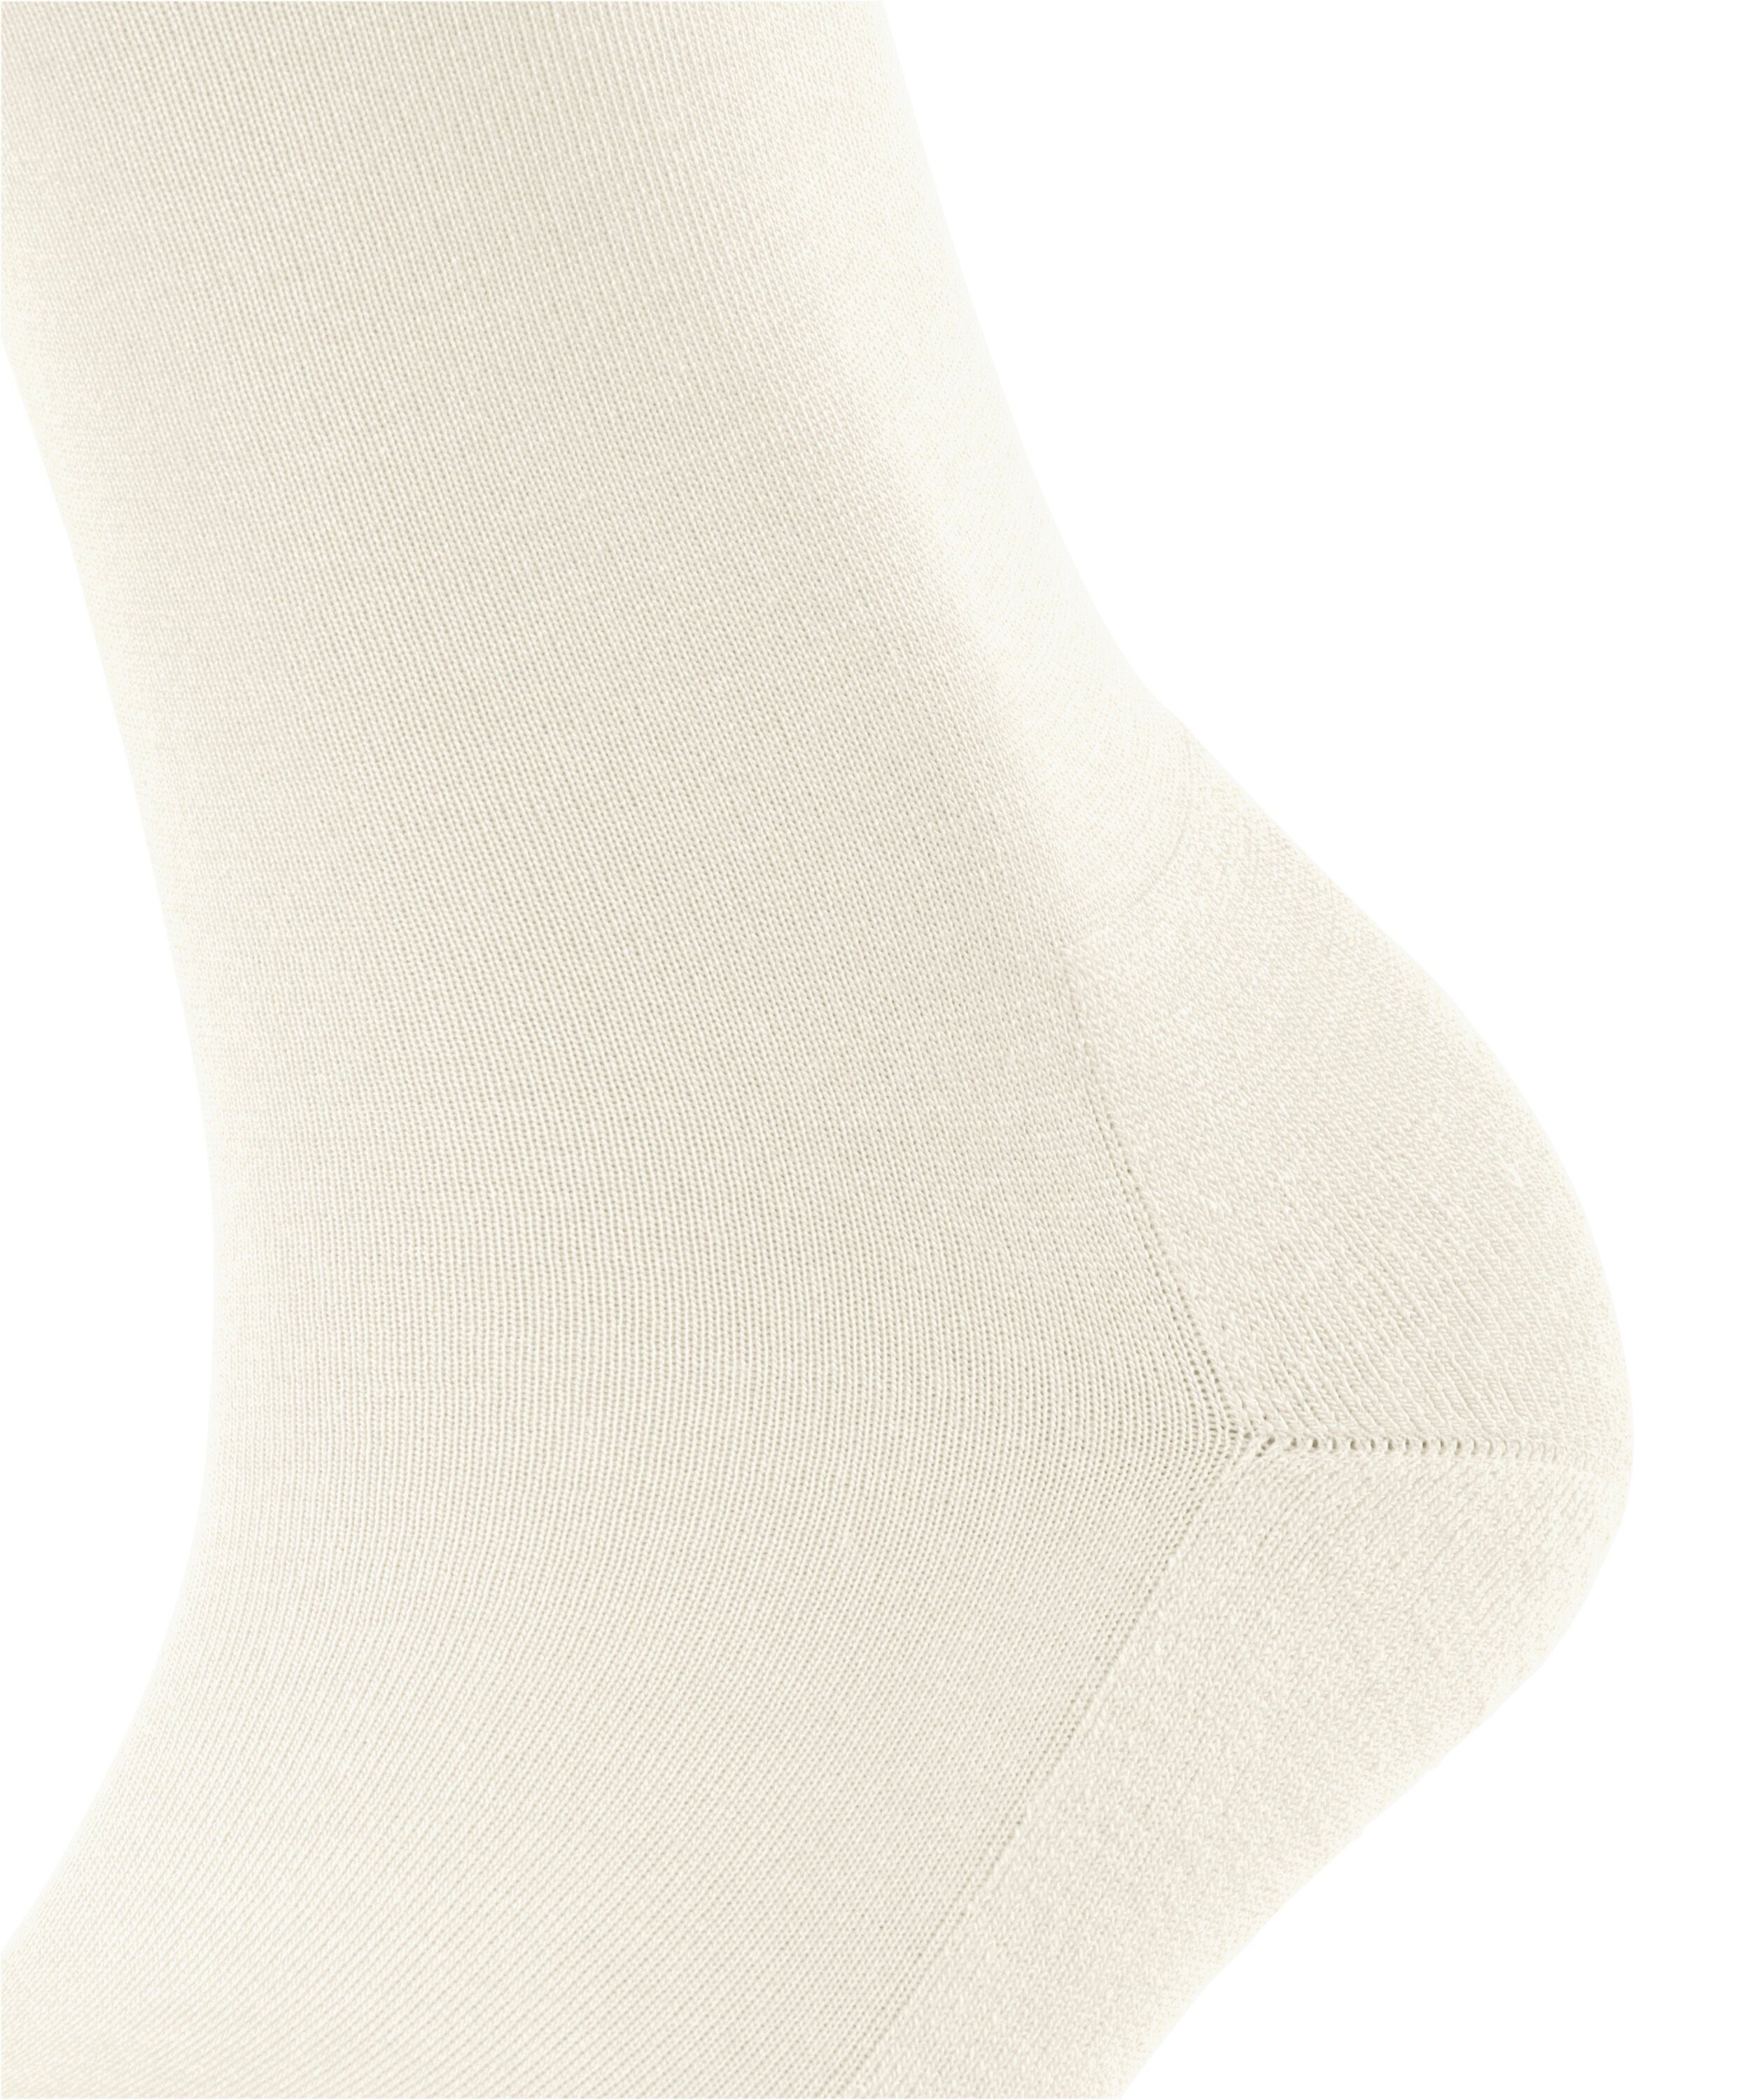 FALKE Socken ClimaWool (1-Paar) off-white (2040)